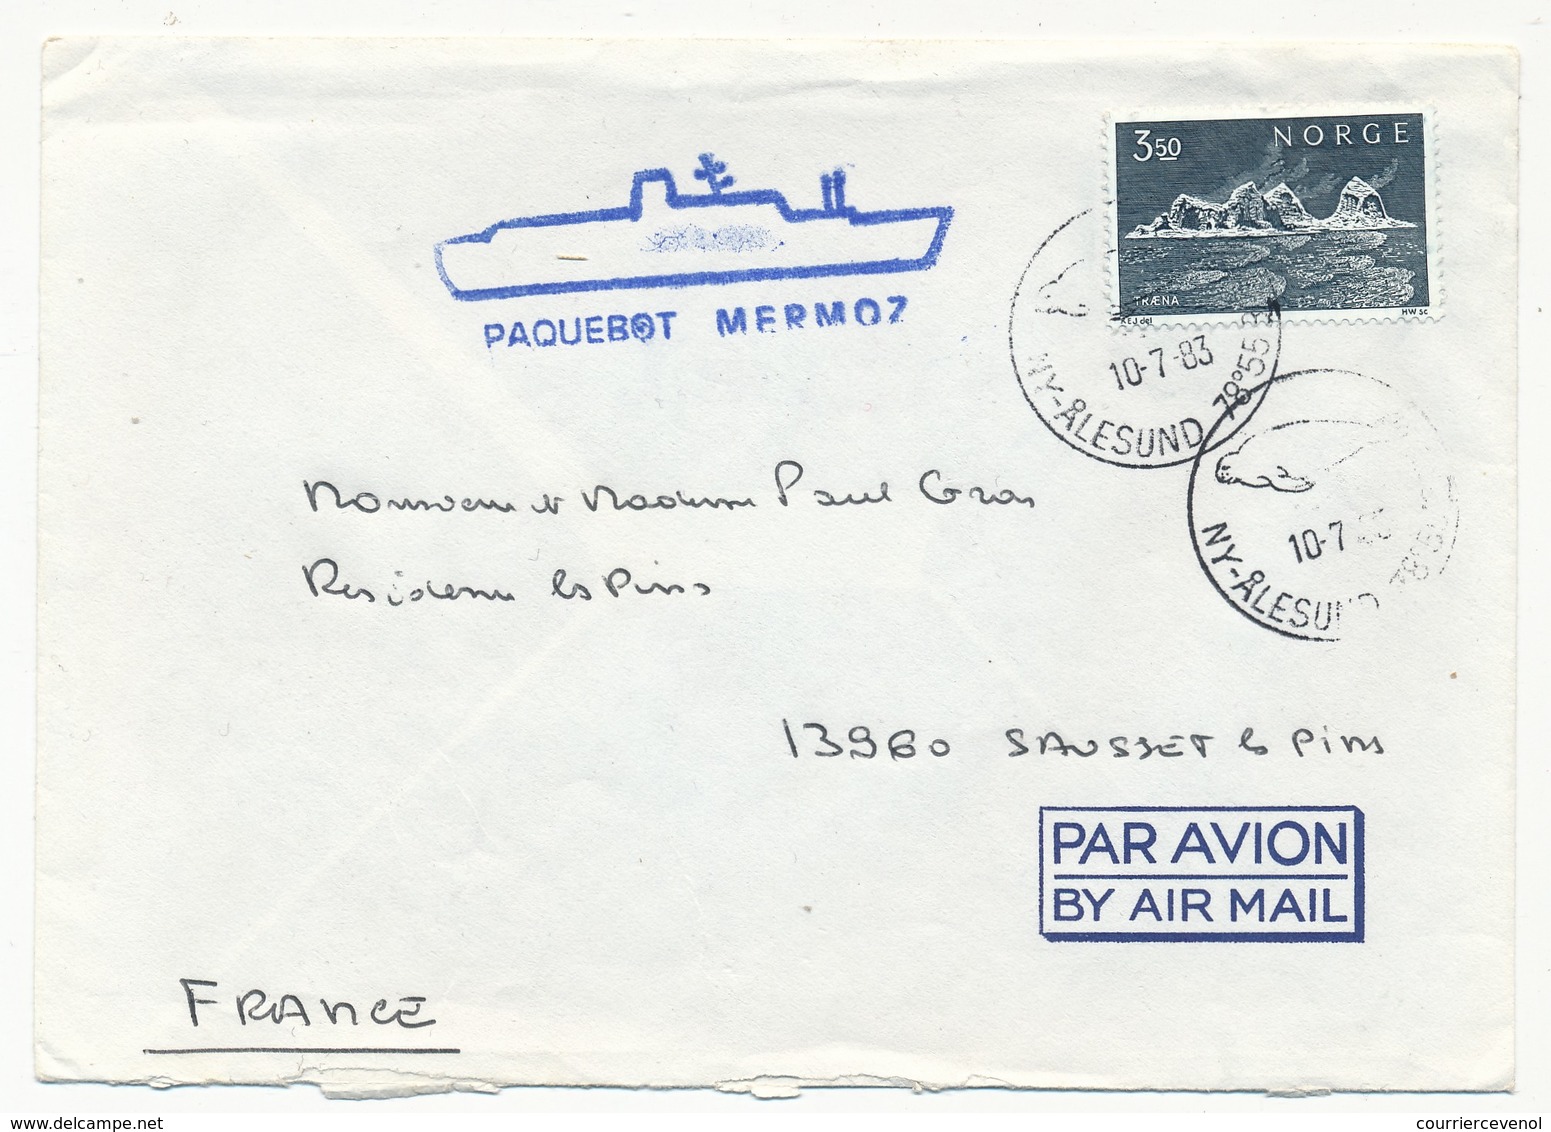 NORVEGE / FRANCE - Enveloppe Croisières Paquet - LY Ålesund (Norvège) 1983 Cachet "Paquebot Mermoz" - Maritime Post